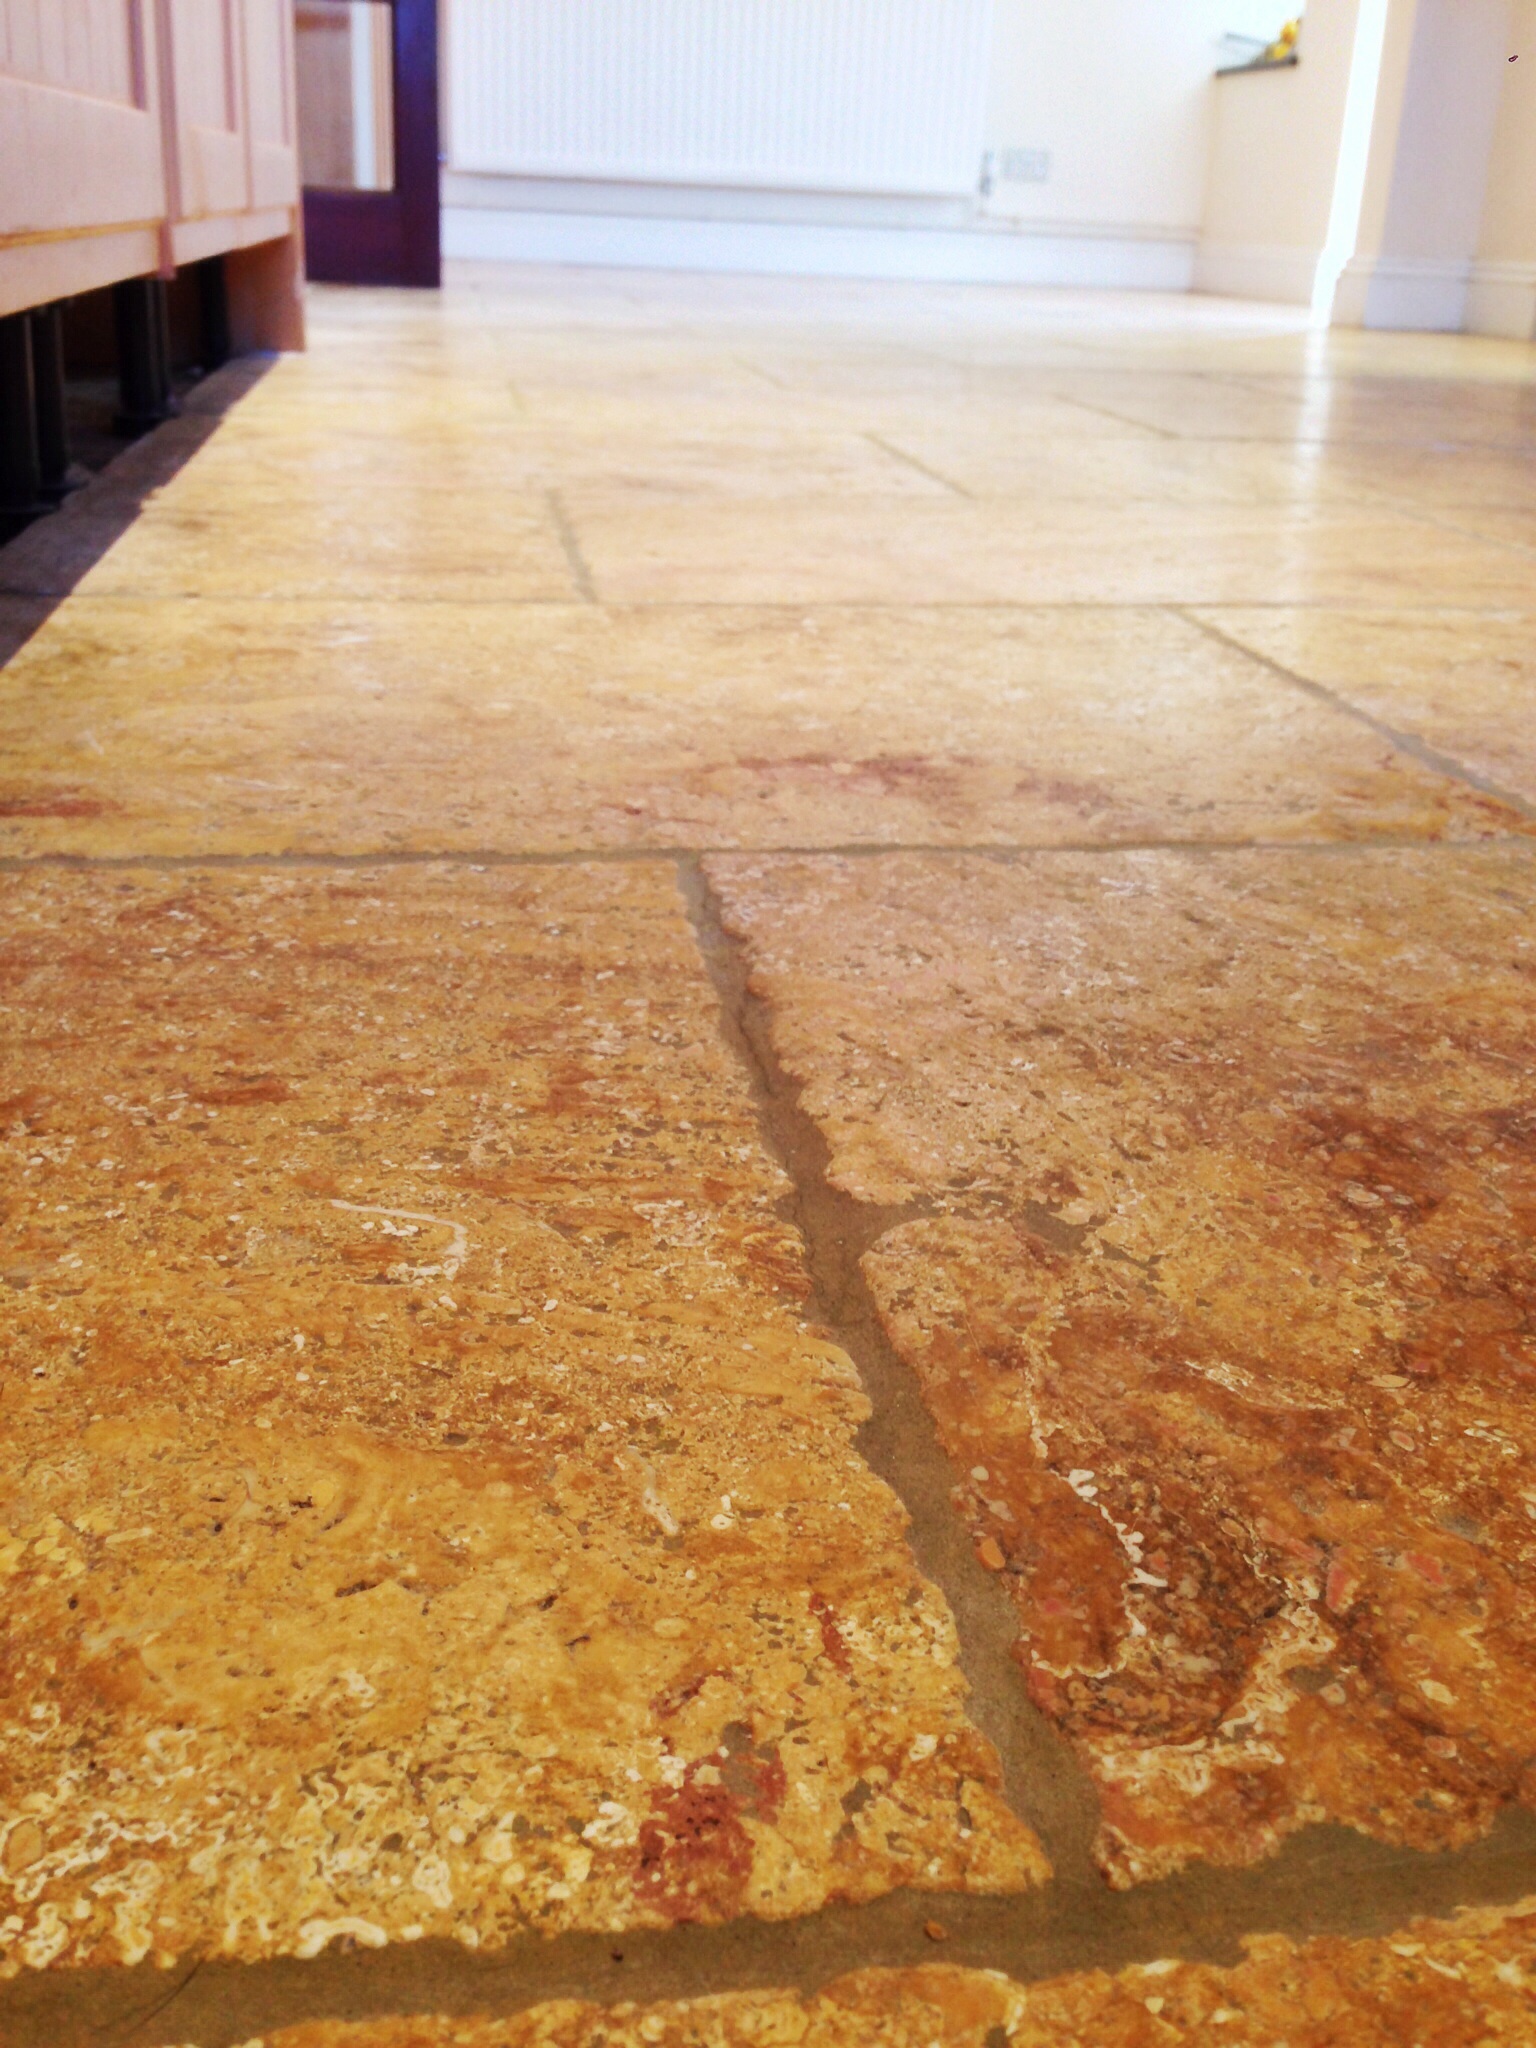 Limestone tiled kitchen floor AFTER restoration